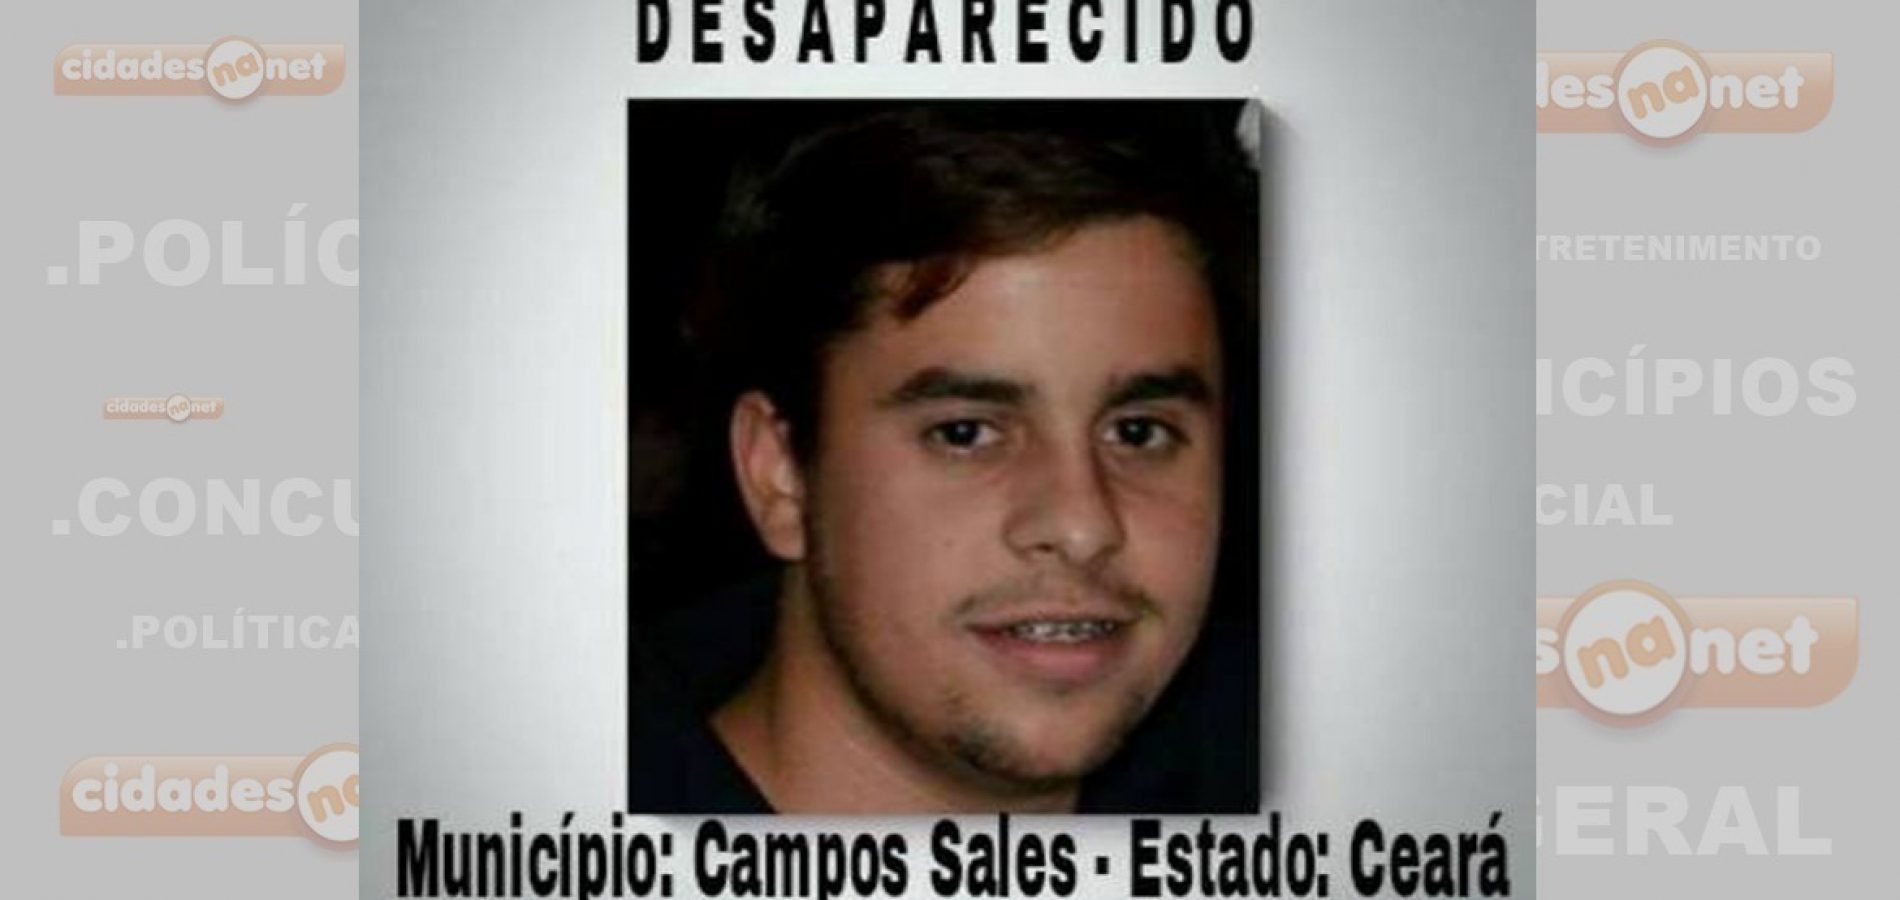 Desaparecimento de jovem em Campos Sales comove toda a região